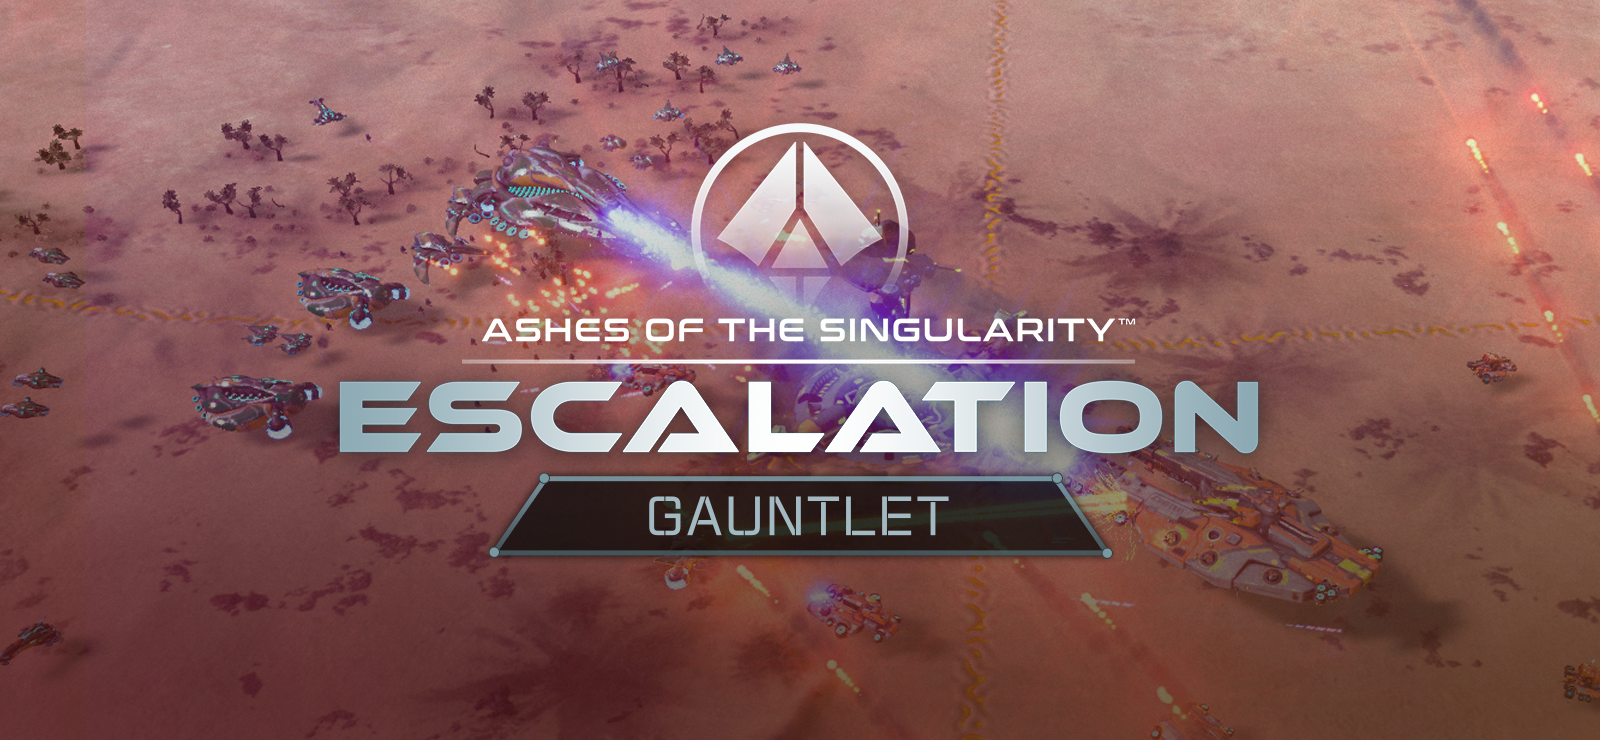 Ashes Of The Singularity: Escalation - Gauntlet DLC